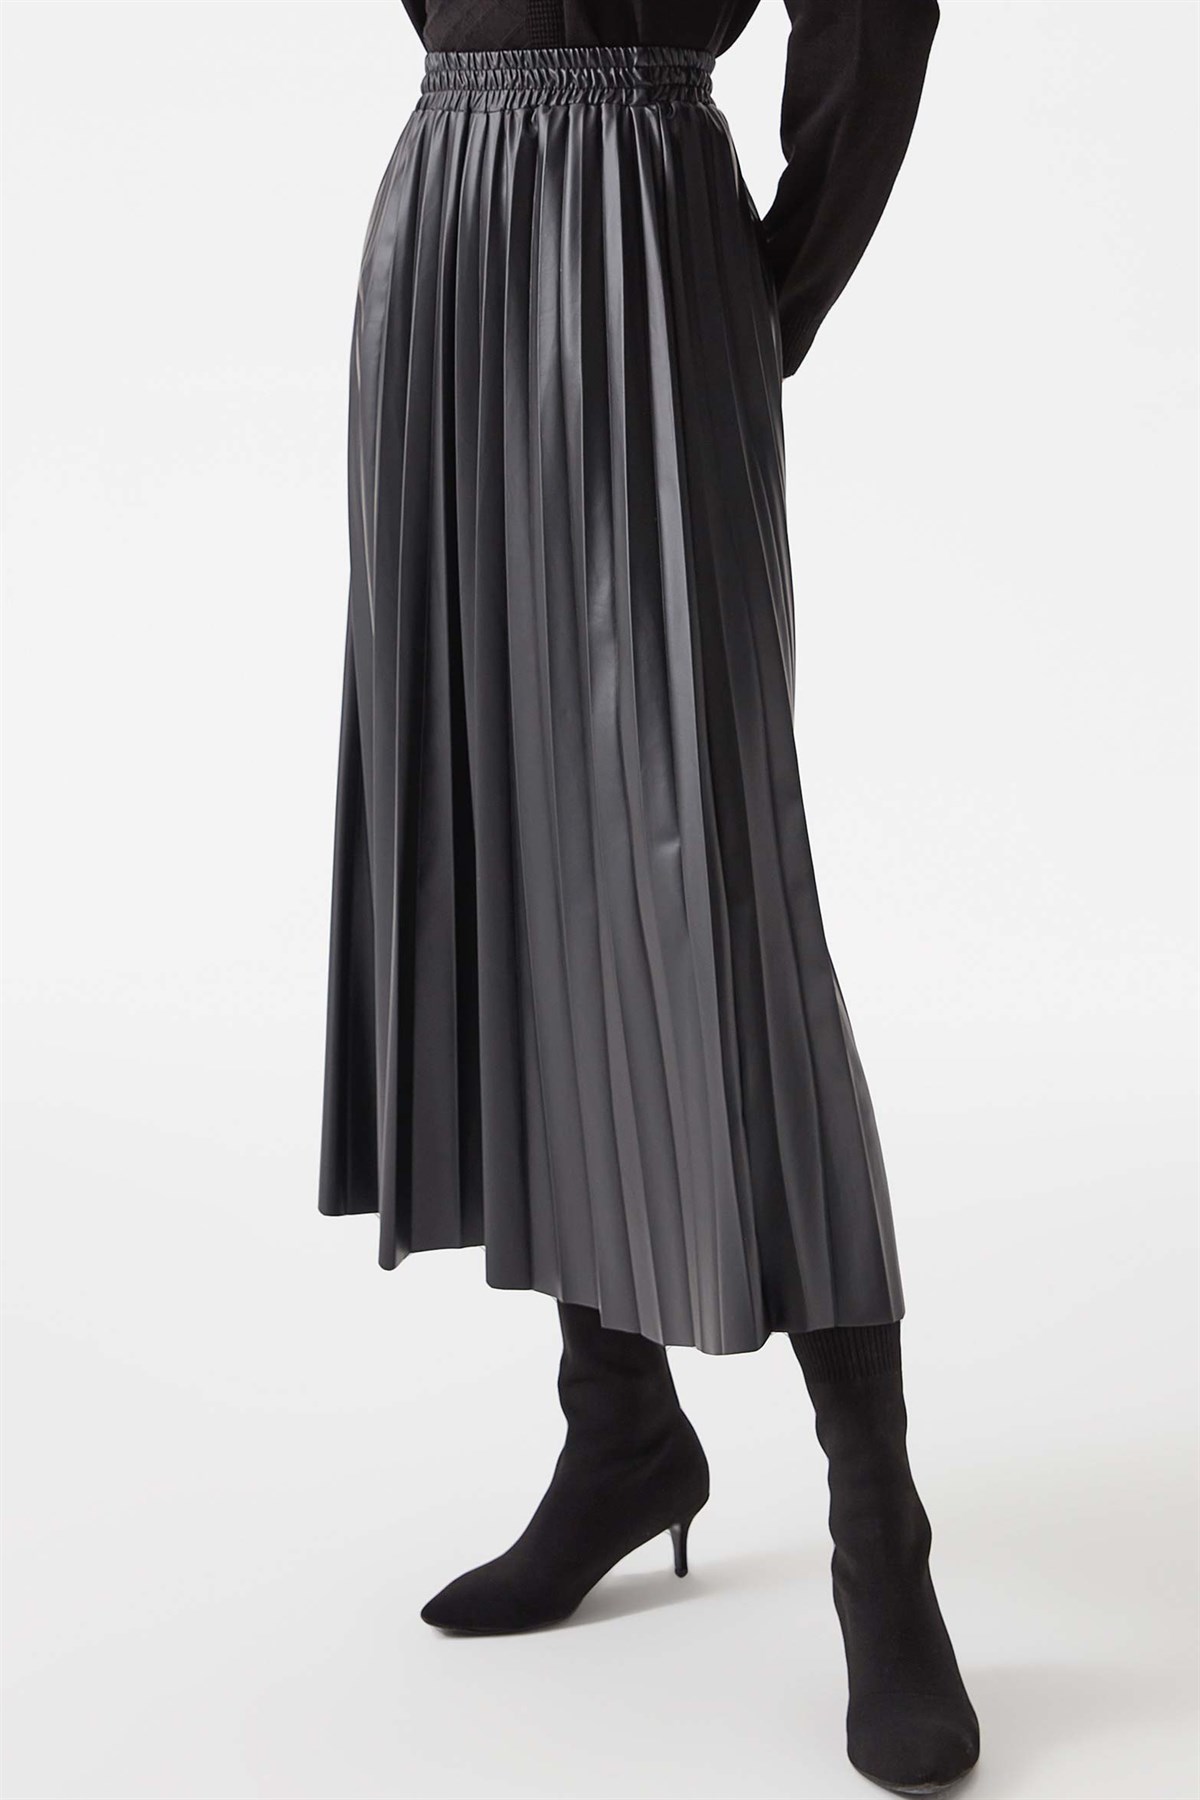 Elastic Waist Plisoley Leather Skirt - Black